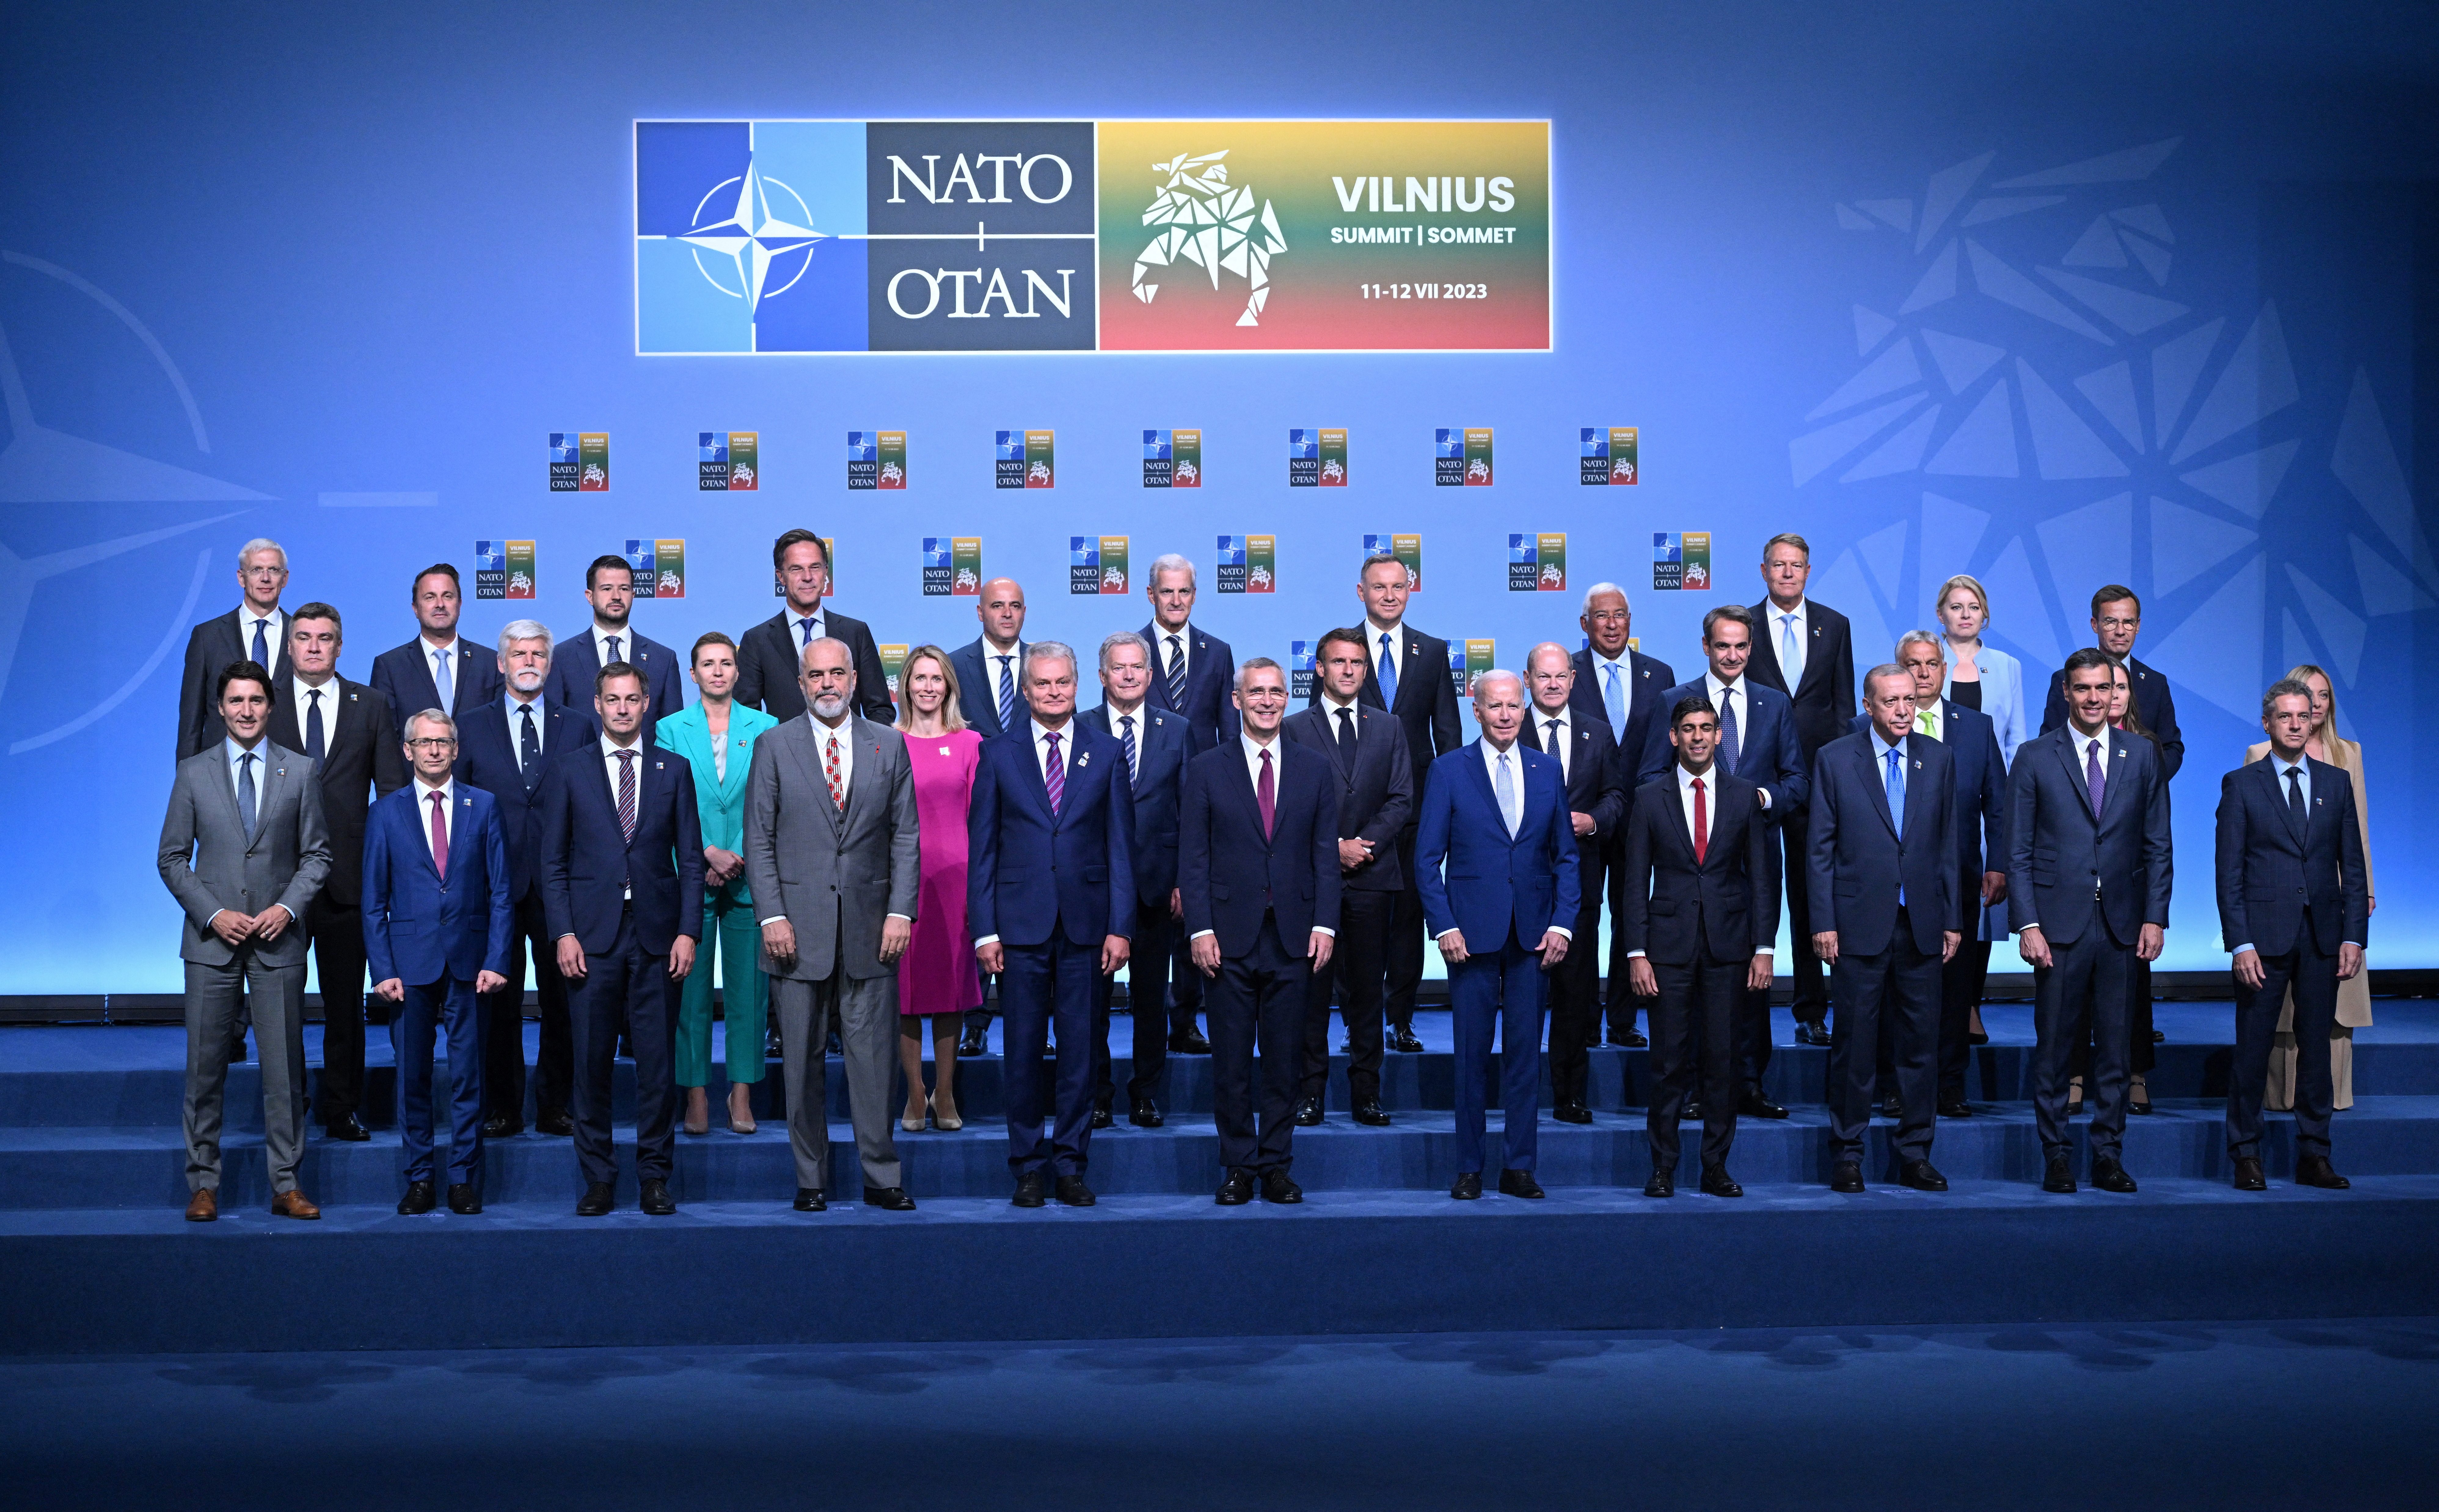 NATO Leaders Summit in Vilnius